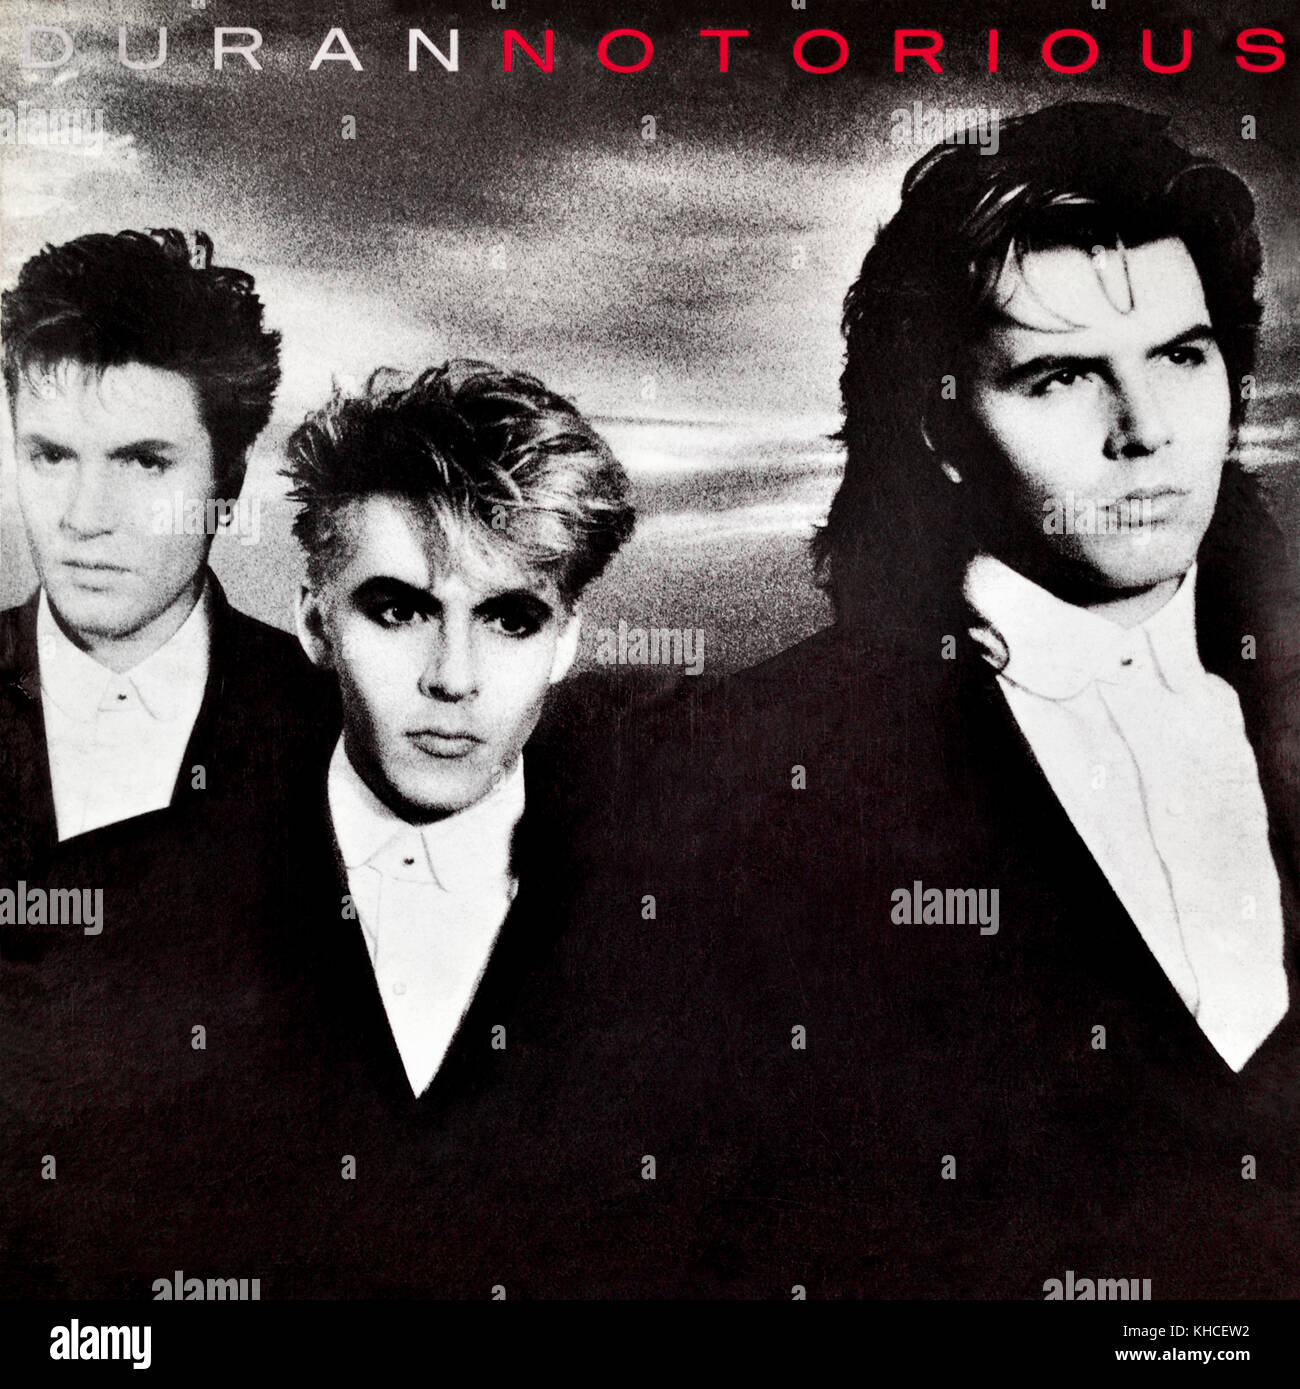 Duran Duran - original vinyl album cover - Notorious - 1986 Stock Photo